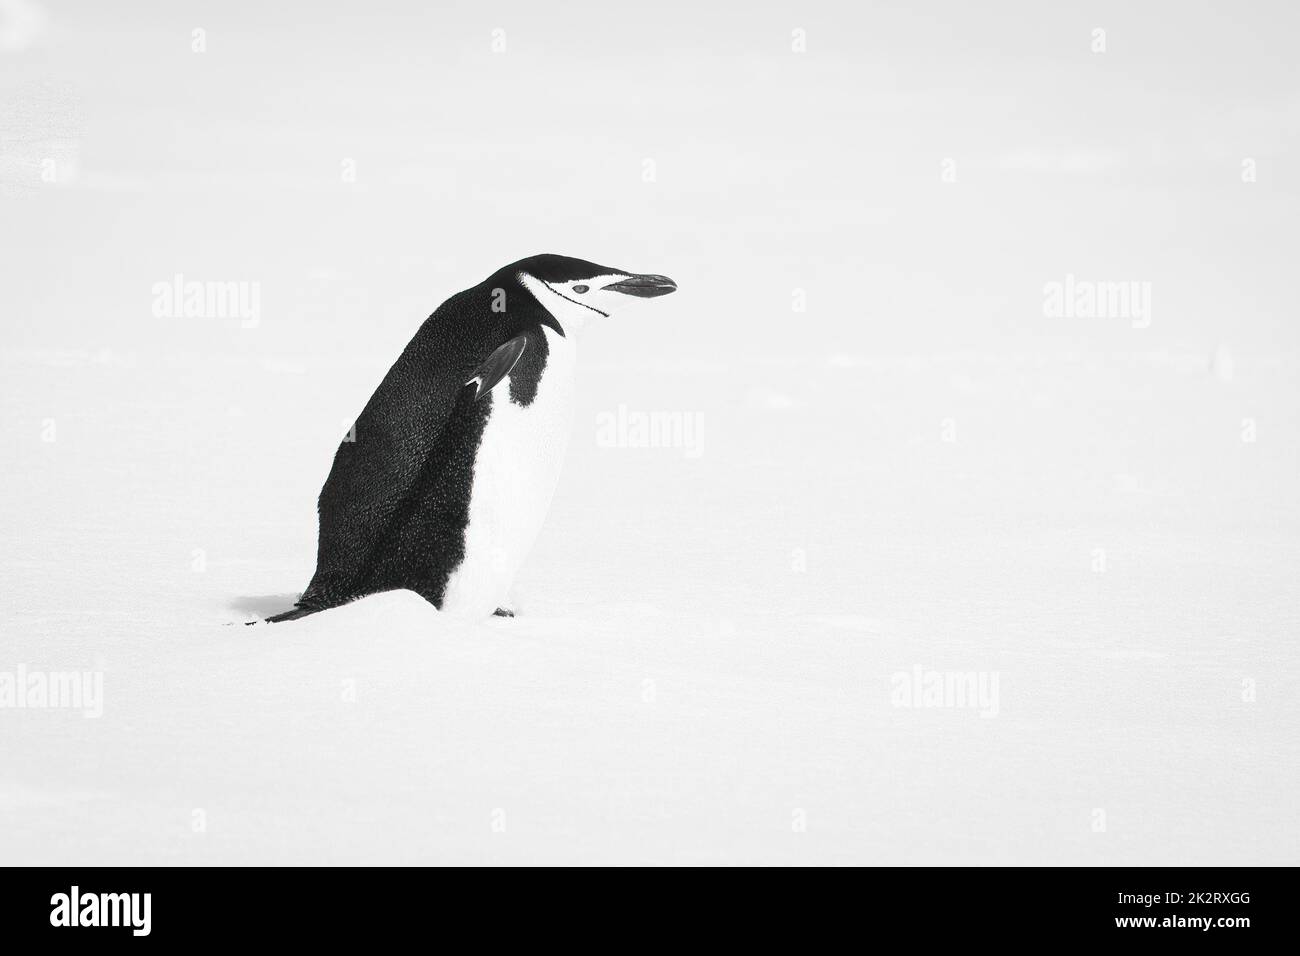 Pinguino mono cinstrap in profilo nella neve Foto Stock